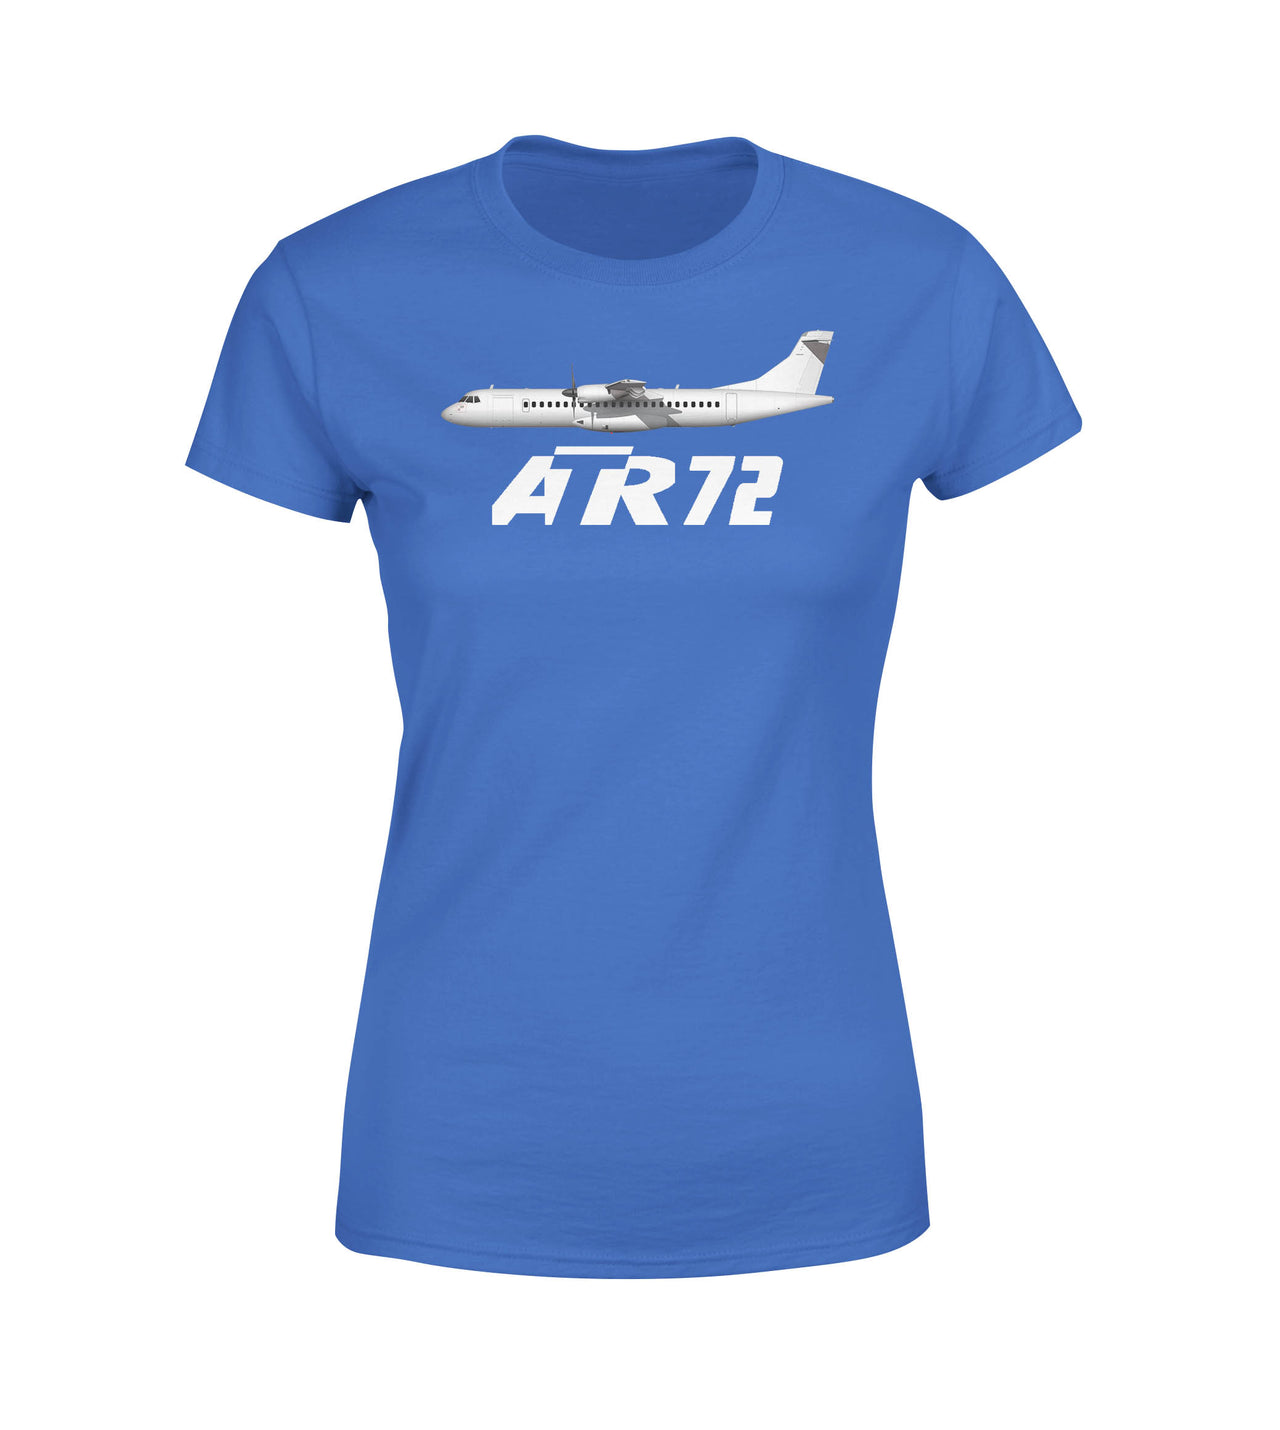 The ATR72 Designed Women T-Shirts